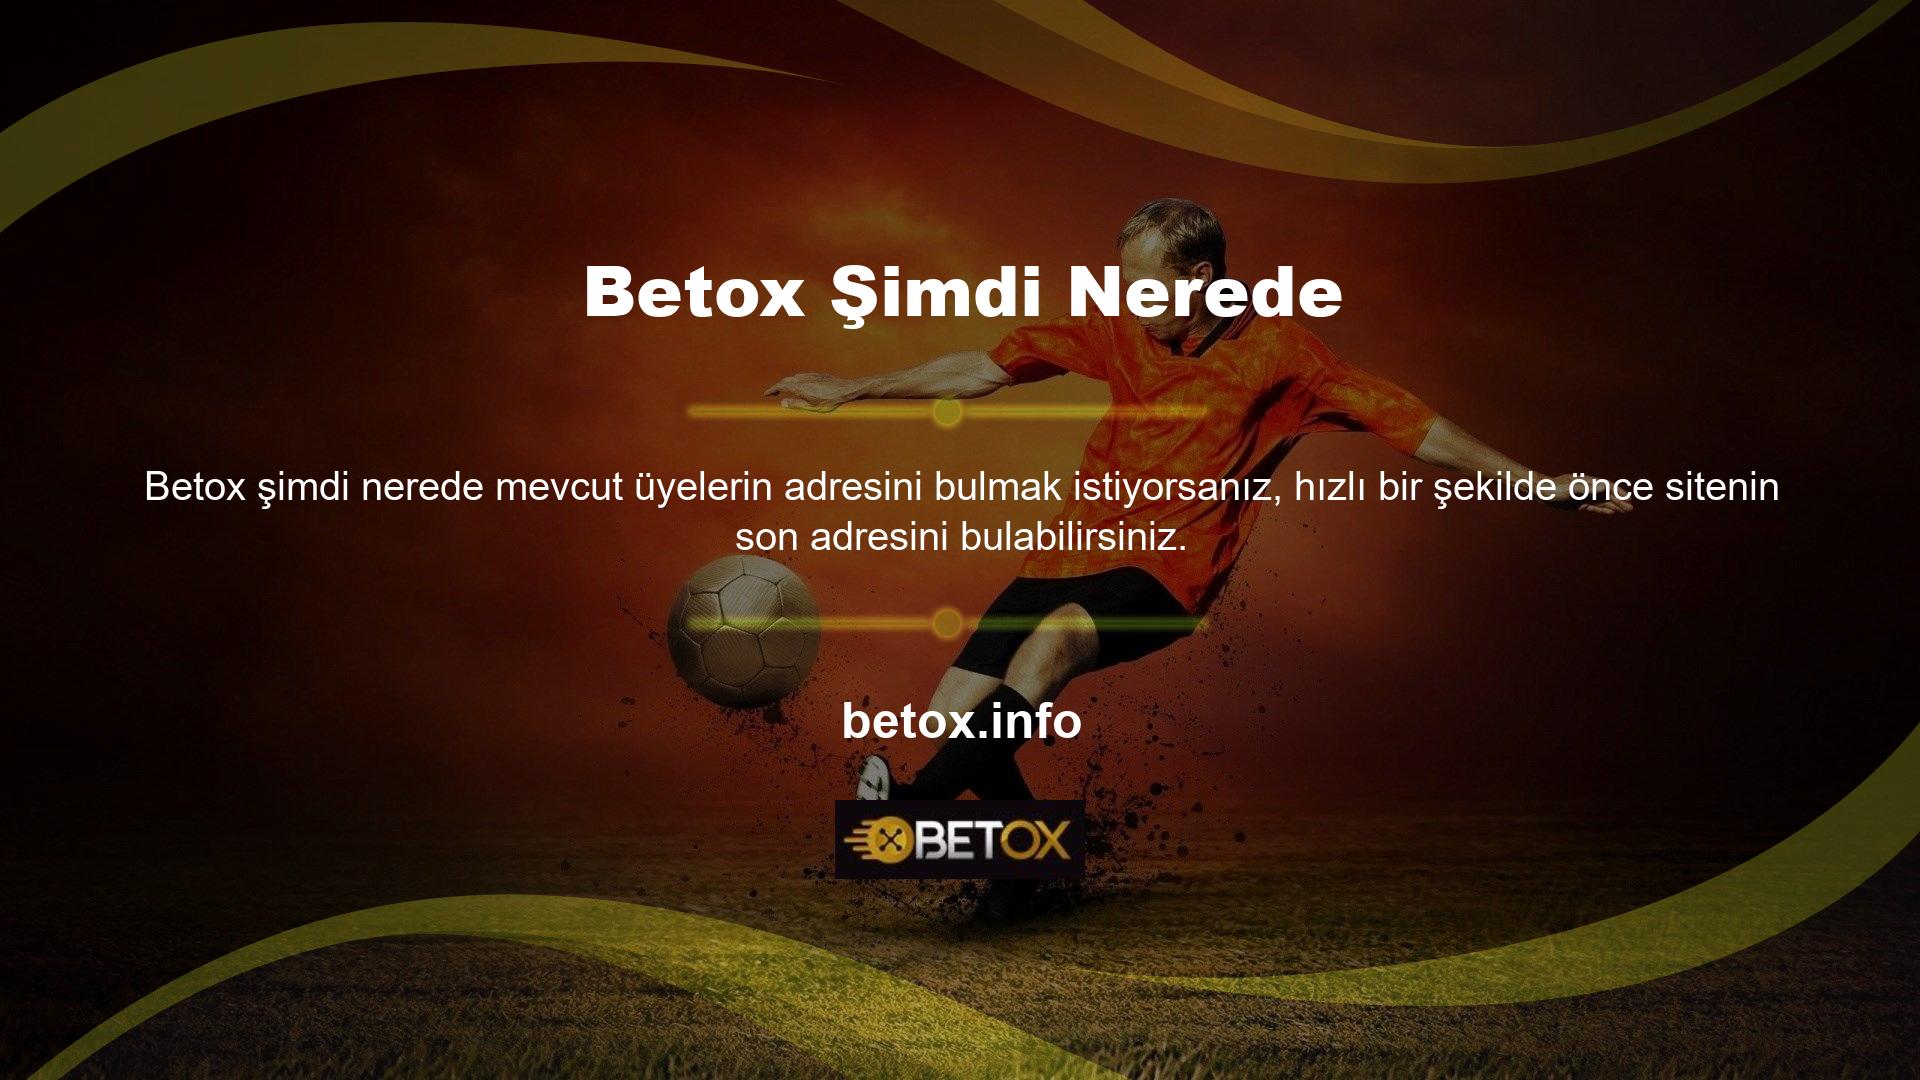 Betox Okur'un sosyal medya hesaplarının da gerekli bilgileri verdiğini de belirtelim